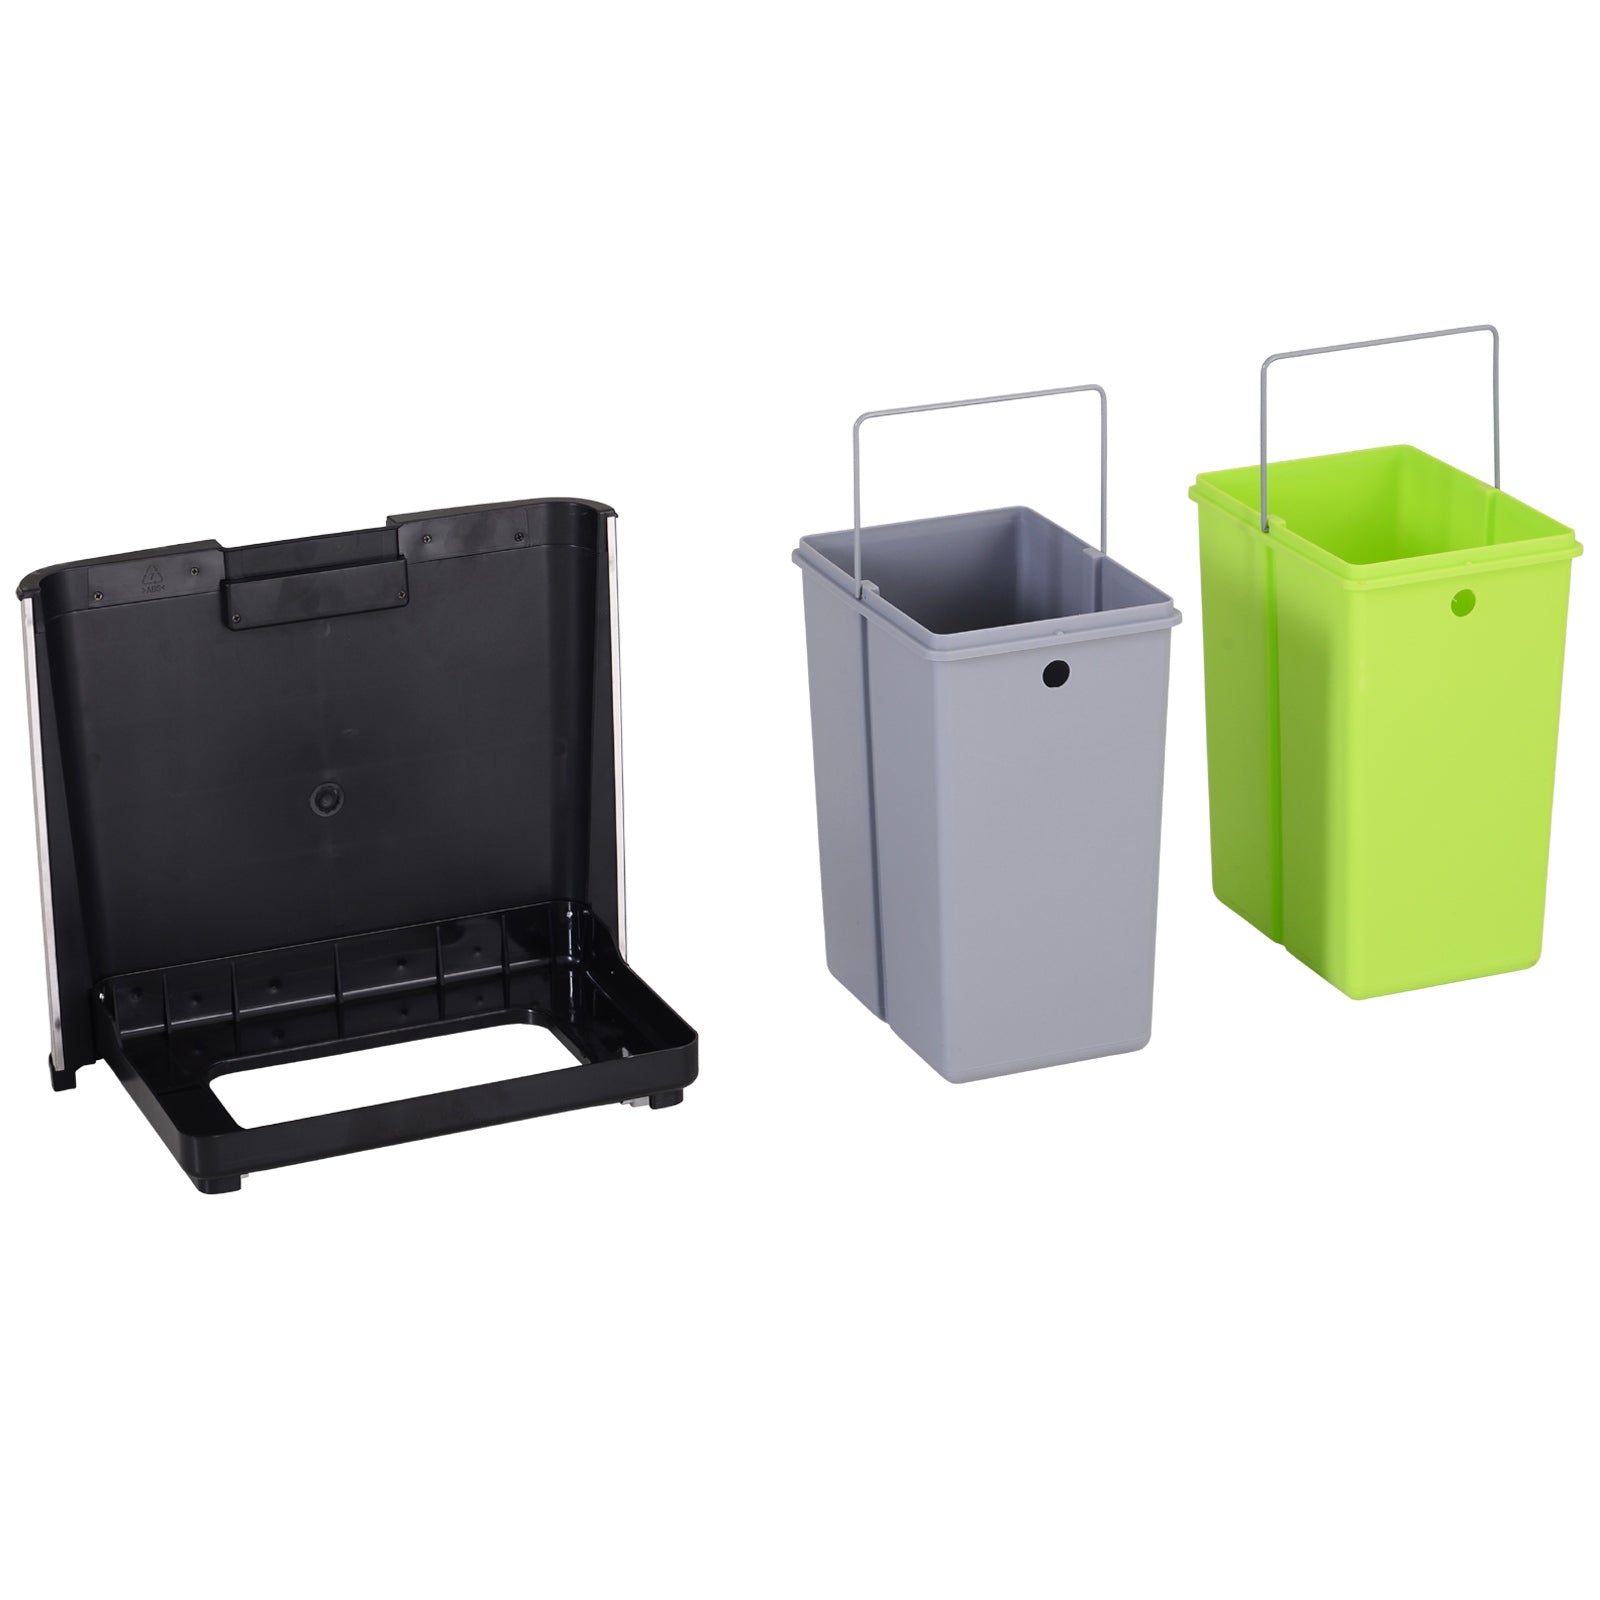 Inox caixote do lixo para reciclagem exterior com compartimentos Recycle,  abertura da tampa accionada por pedal, 3x15 litros, Aço inox